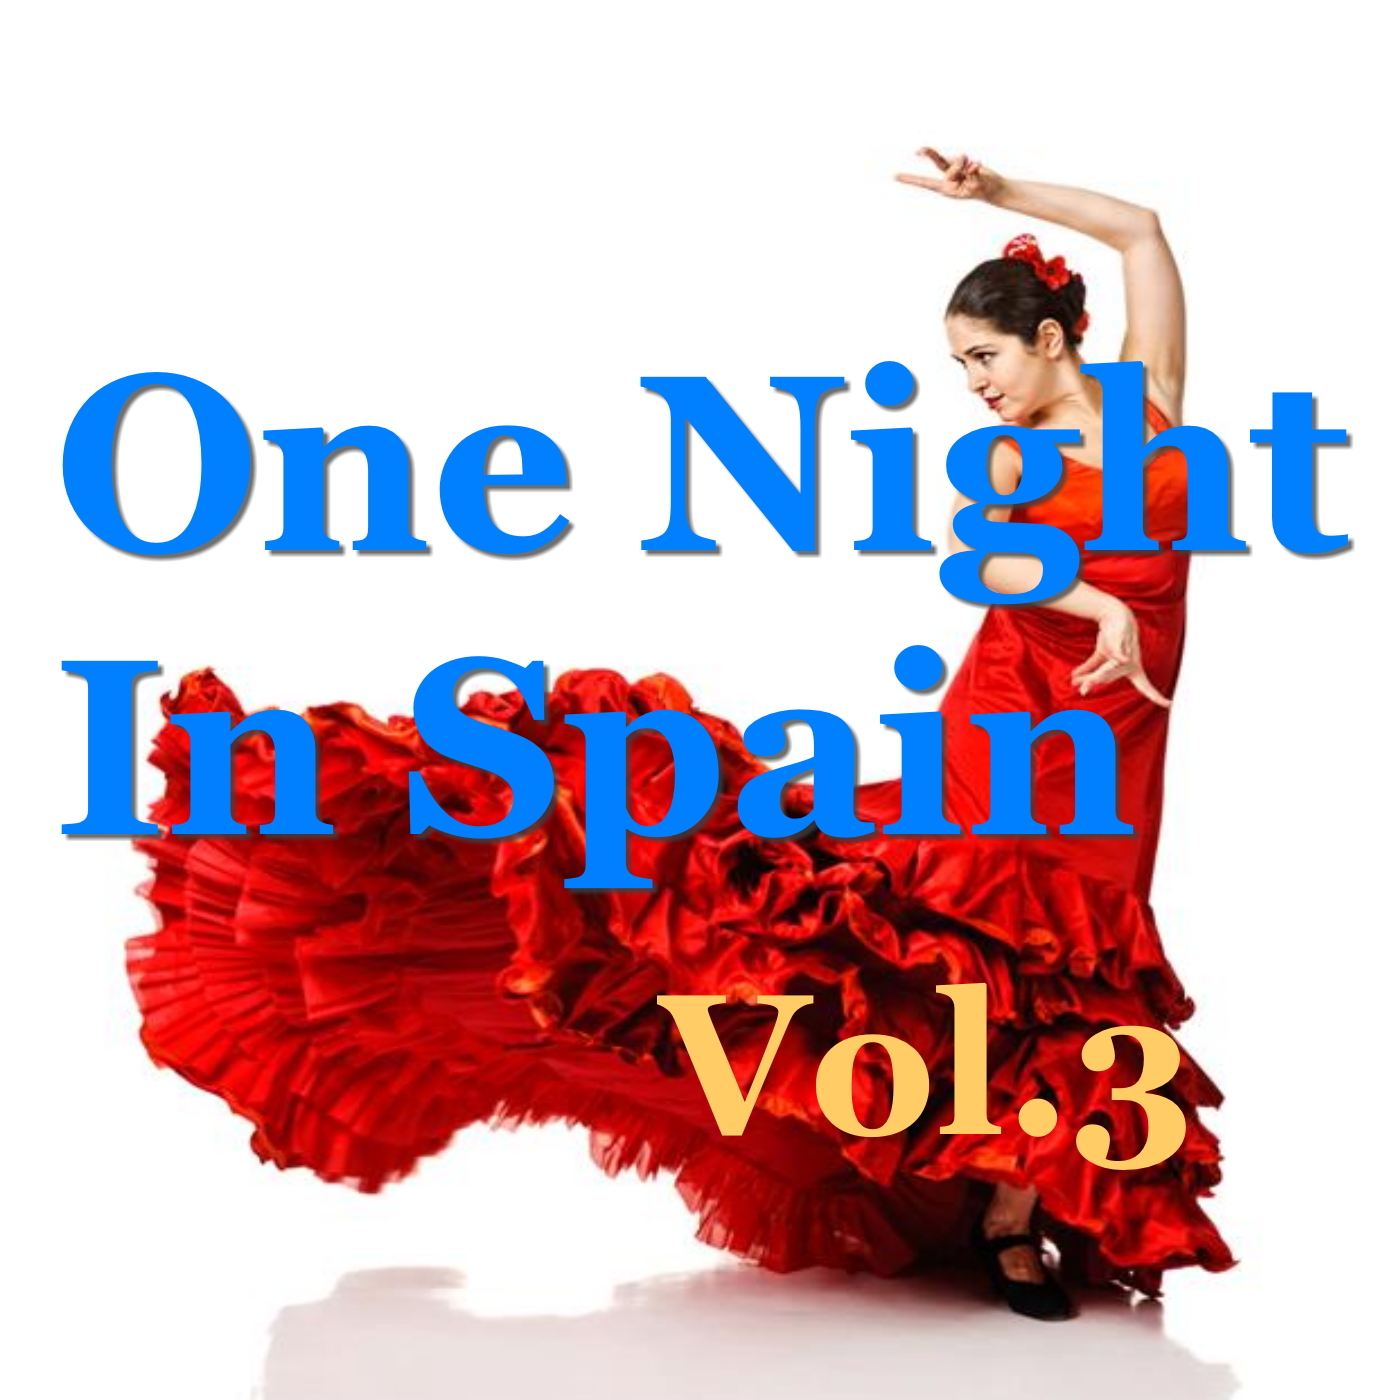 One Night In Spain, Vol.3